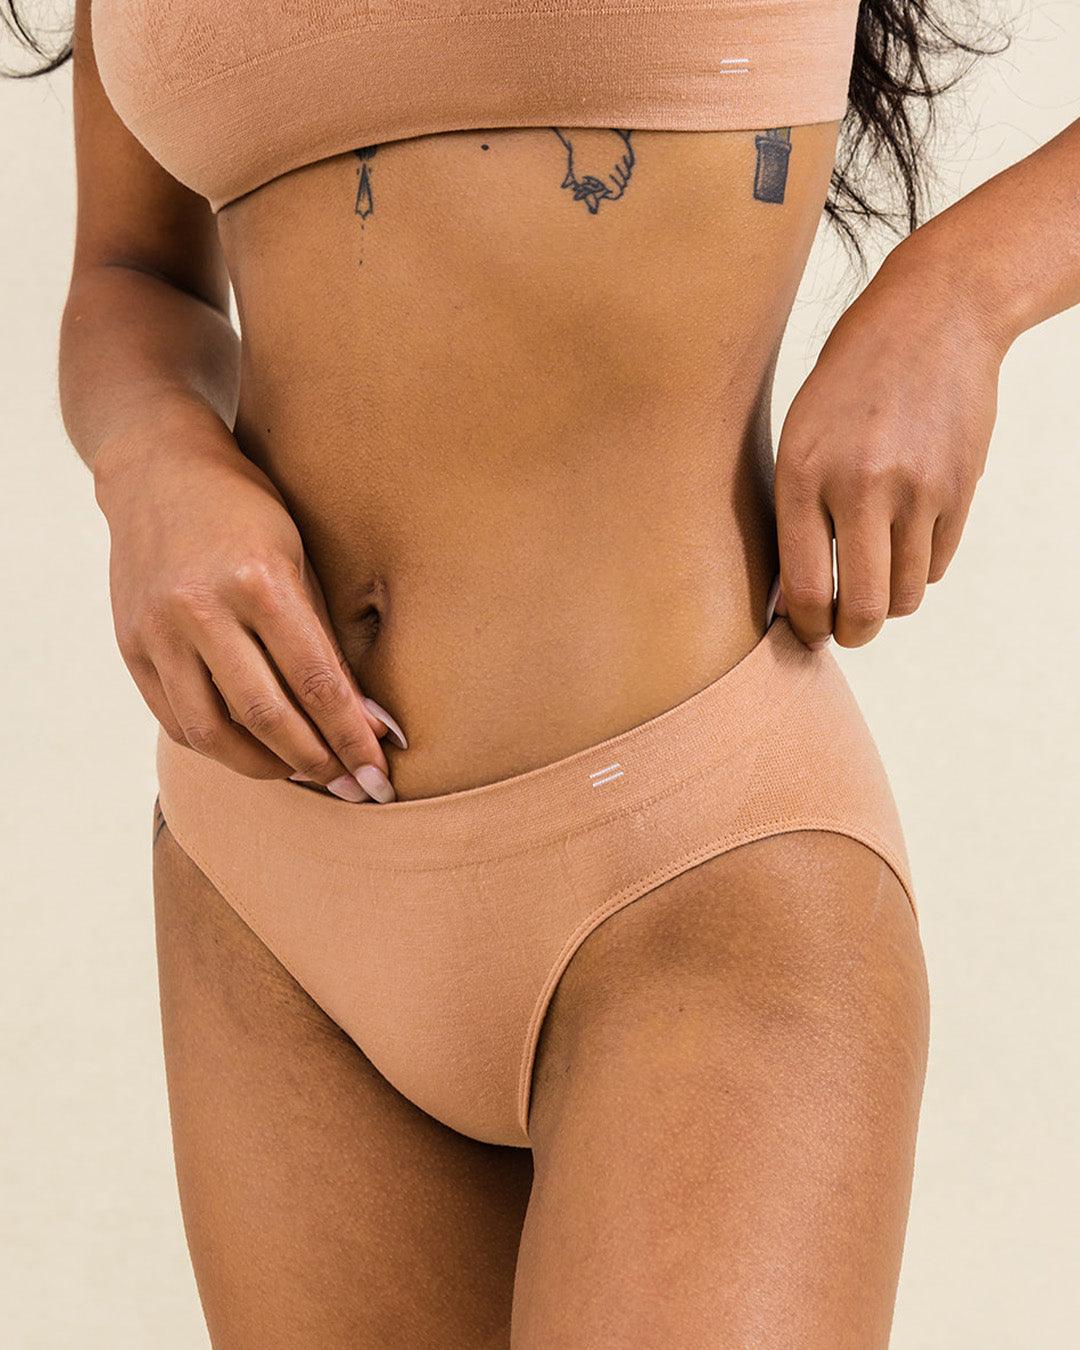 BRANWYN Essentials  Merino Bras & Underwear for Active Women